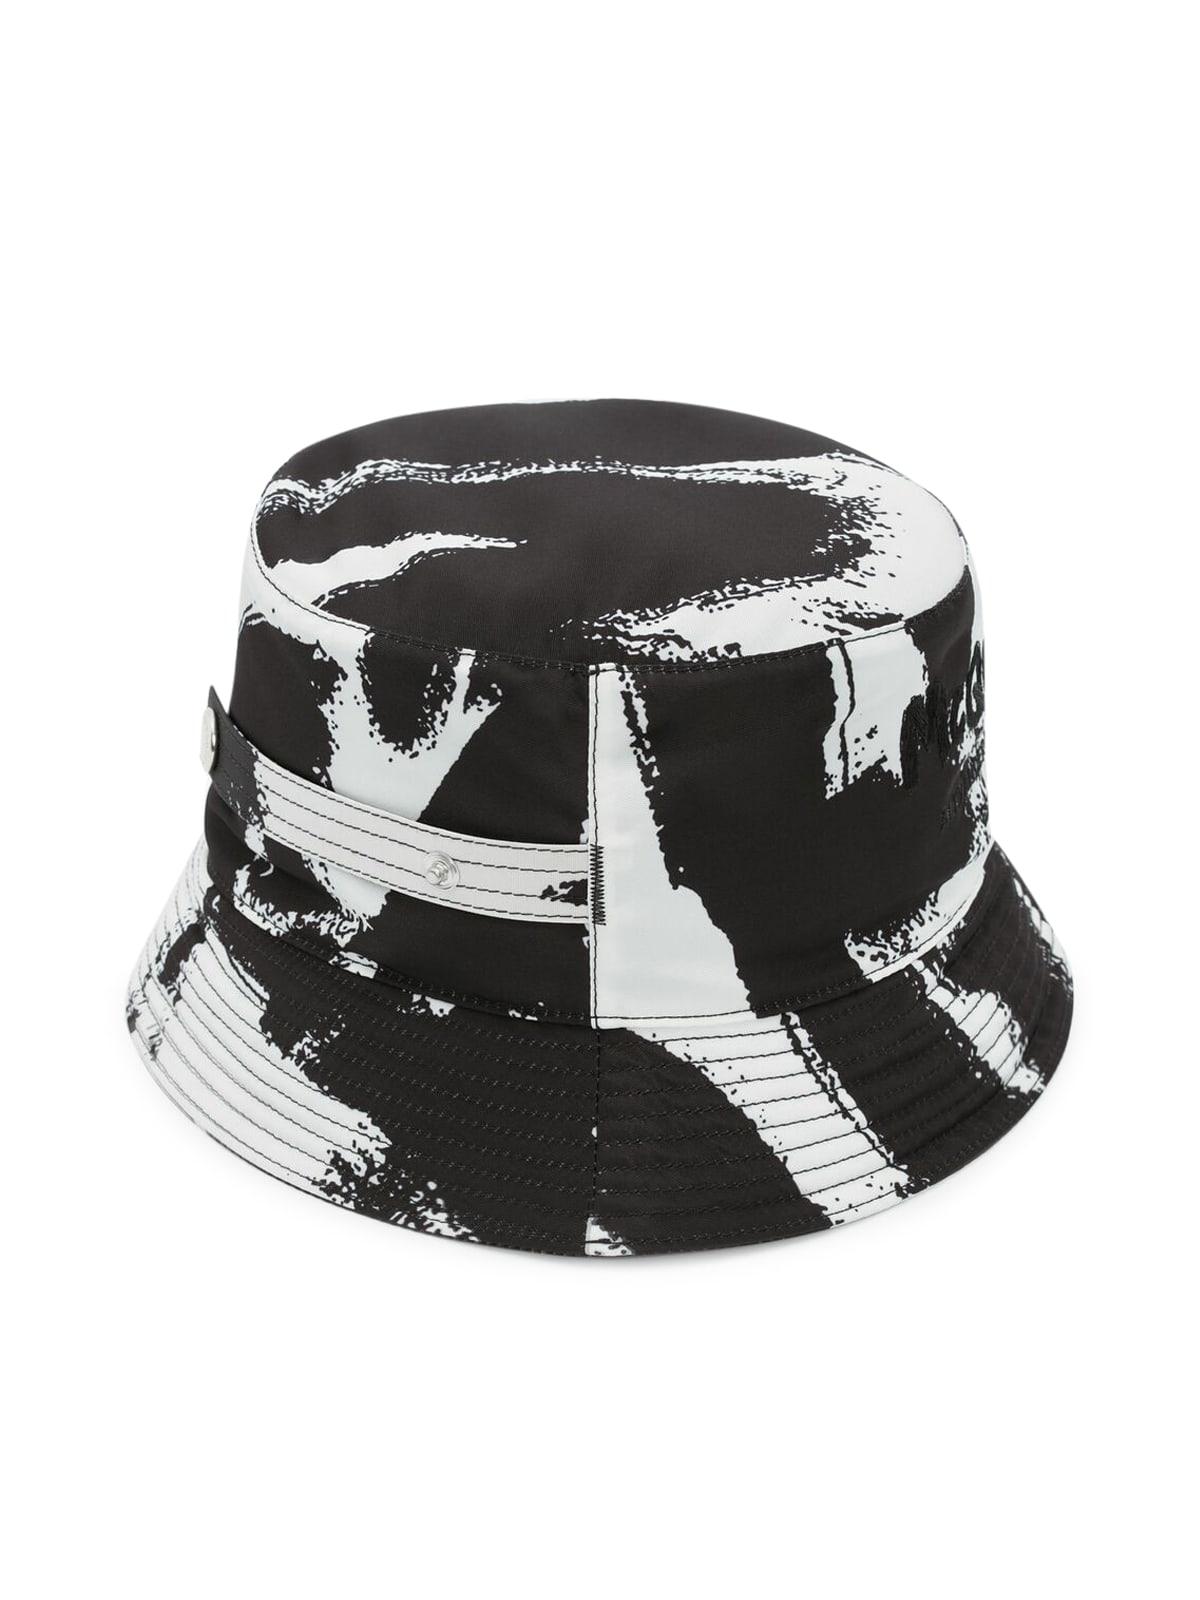 Alexander McQueen Synthetic Black Mcqueen Graffiti Bucket Hat for Men Mens Accessories Hats 